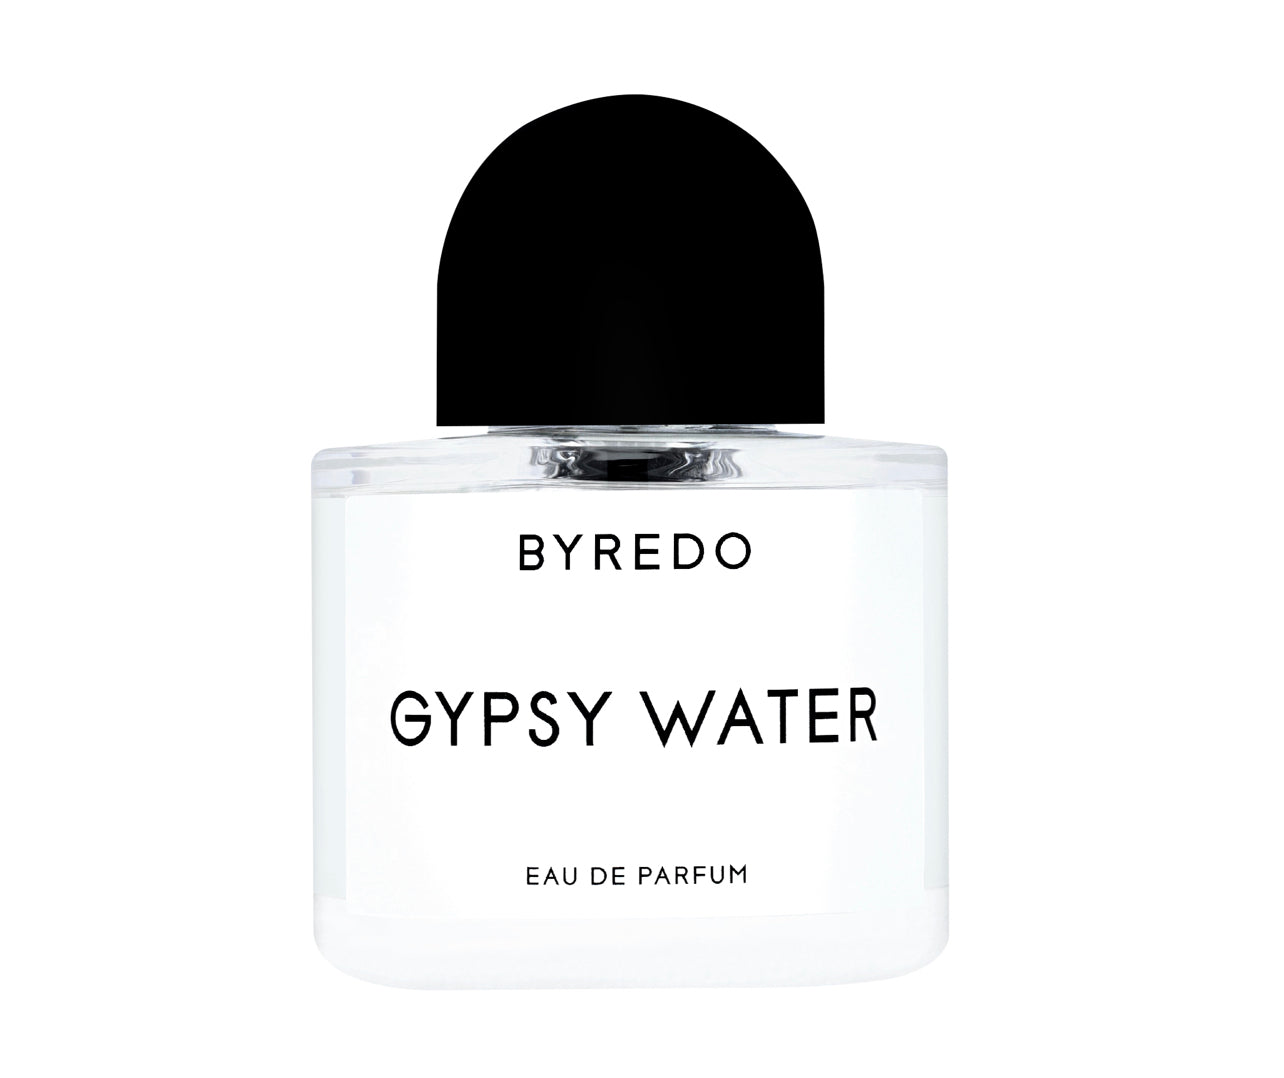 Byredo Gypsy Water Eau De Parfum Samples